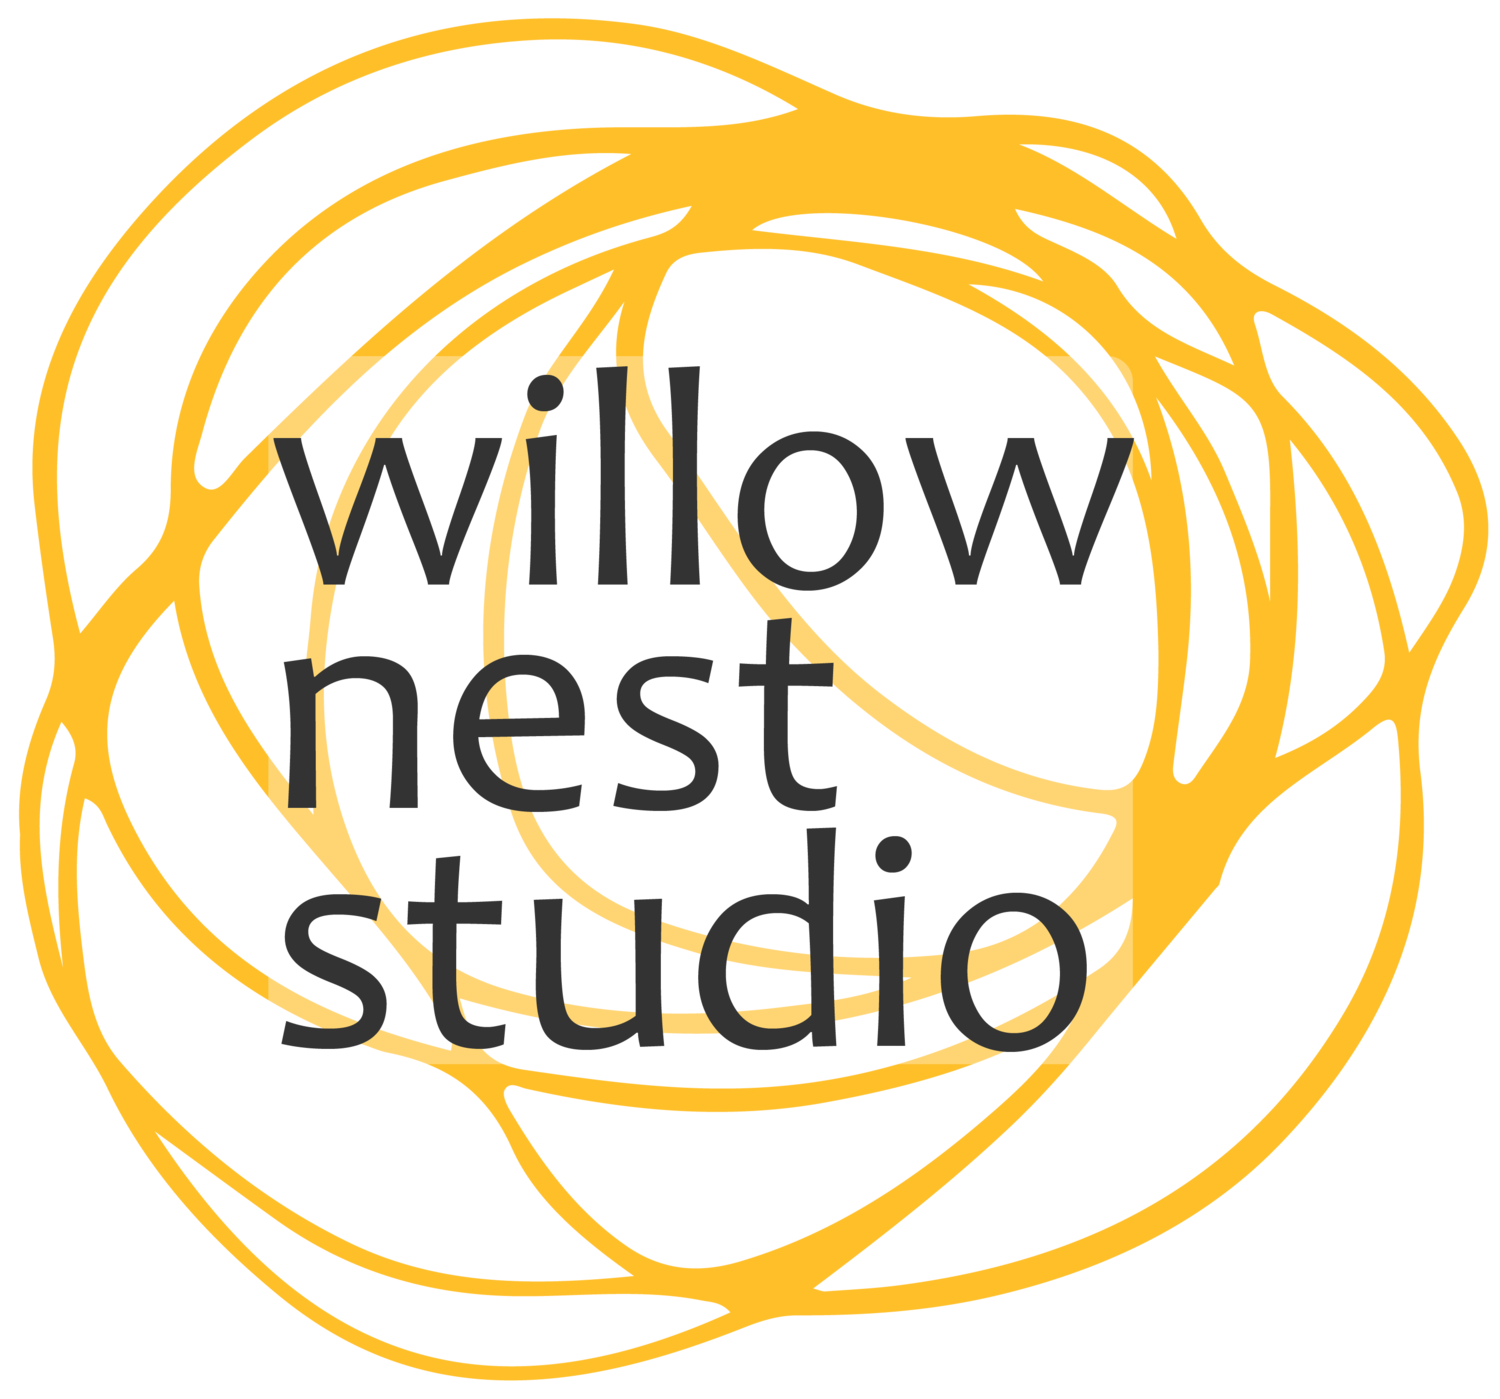 Willow Nest Studio